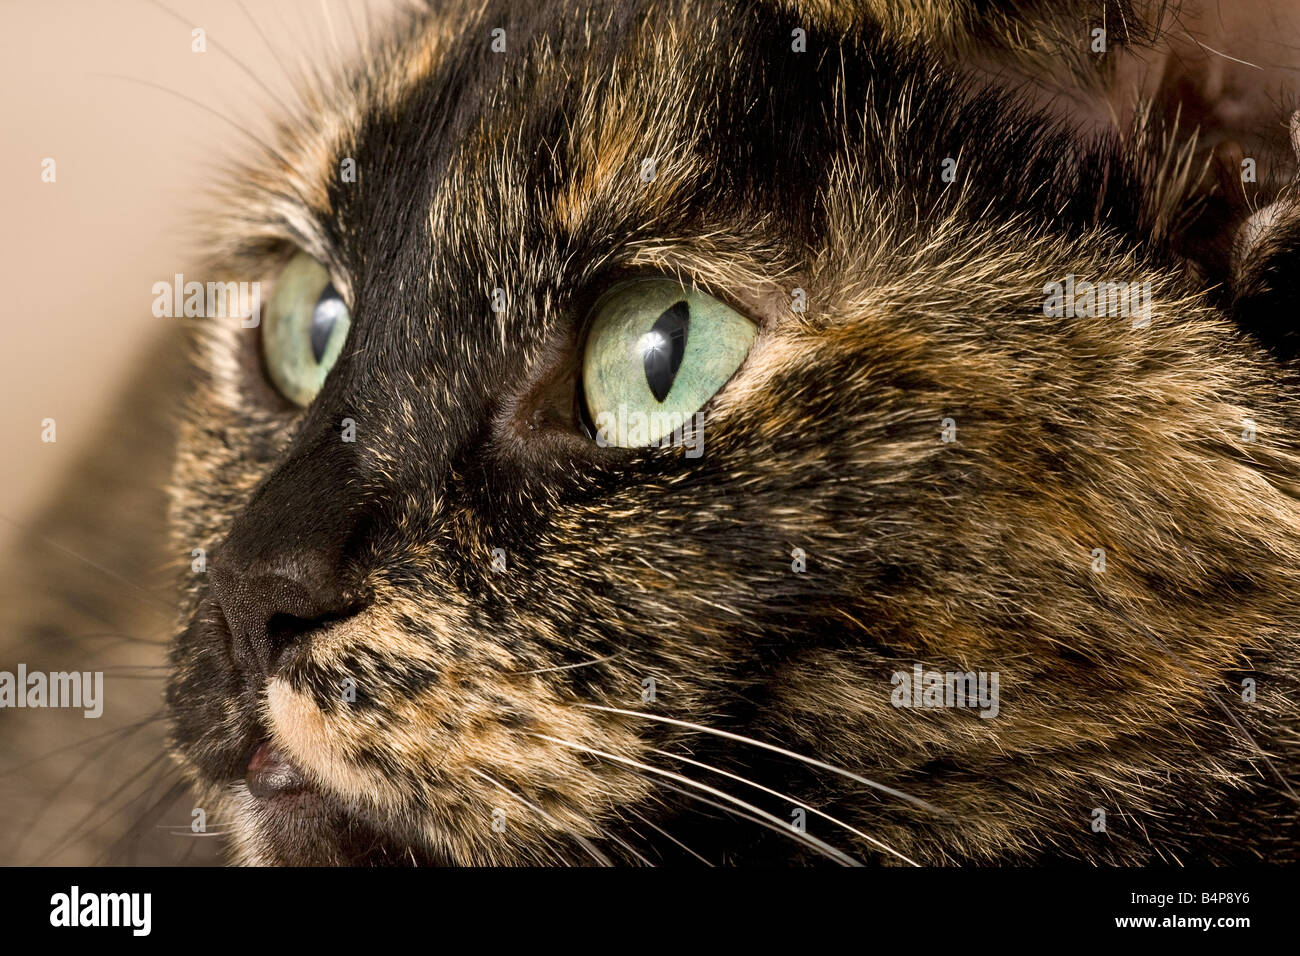 Porträt eines erwachsenen Weibchen schildpatt oder gestromt Katze (Felis catus) etwas weg von der Kamera suchen Stockfoto